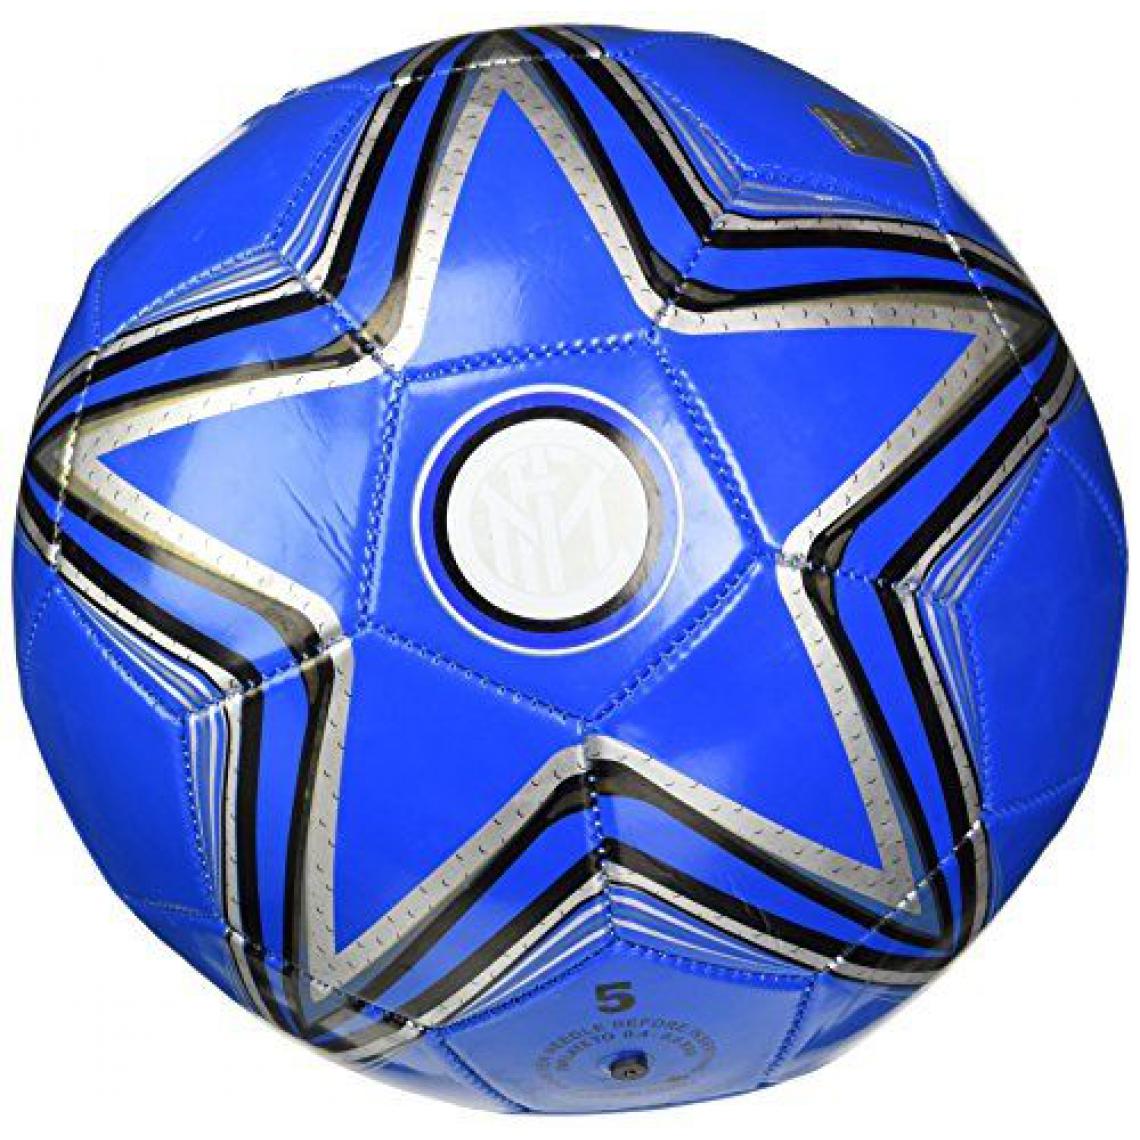 Inconnu - Monde 13397-Ballon de cuir de football INTER F.C - Jeux de balles